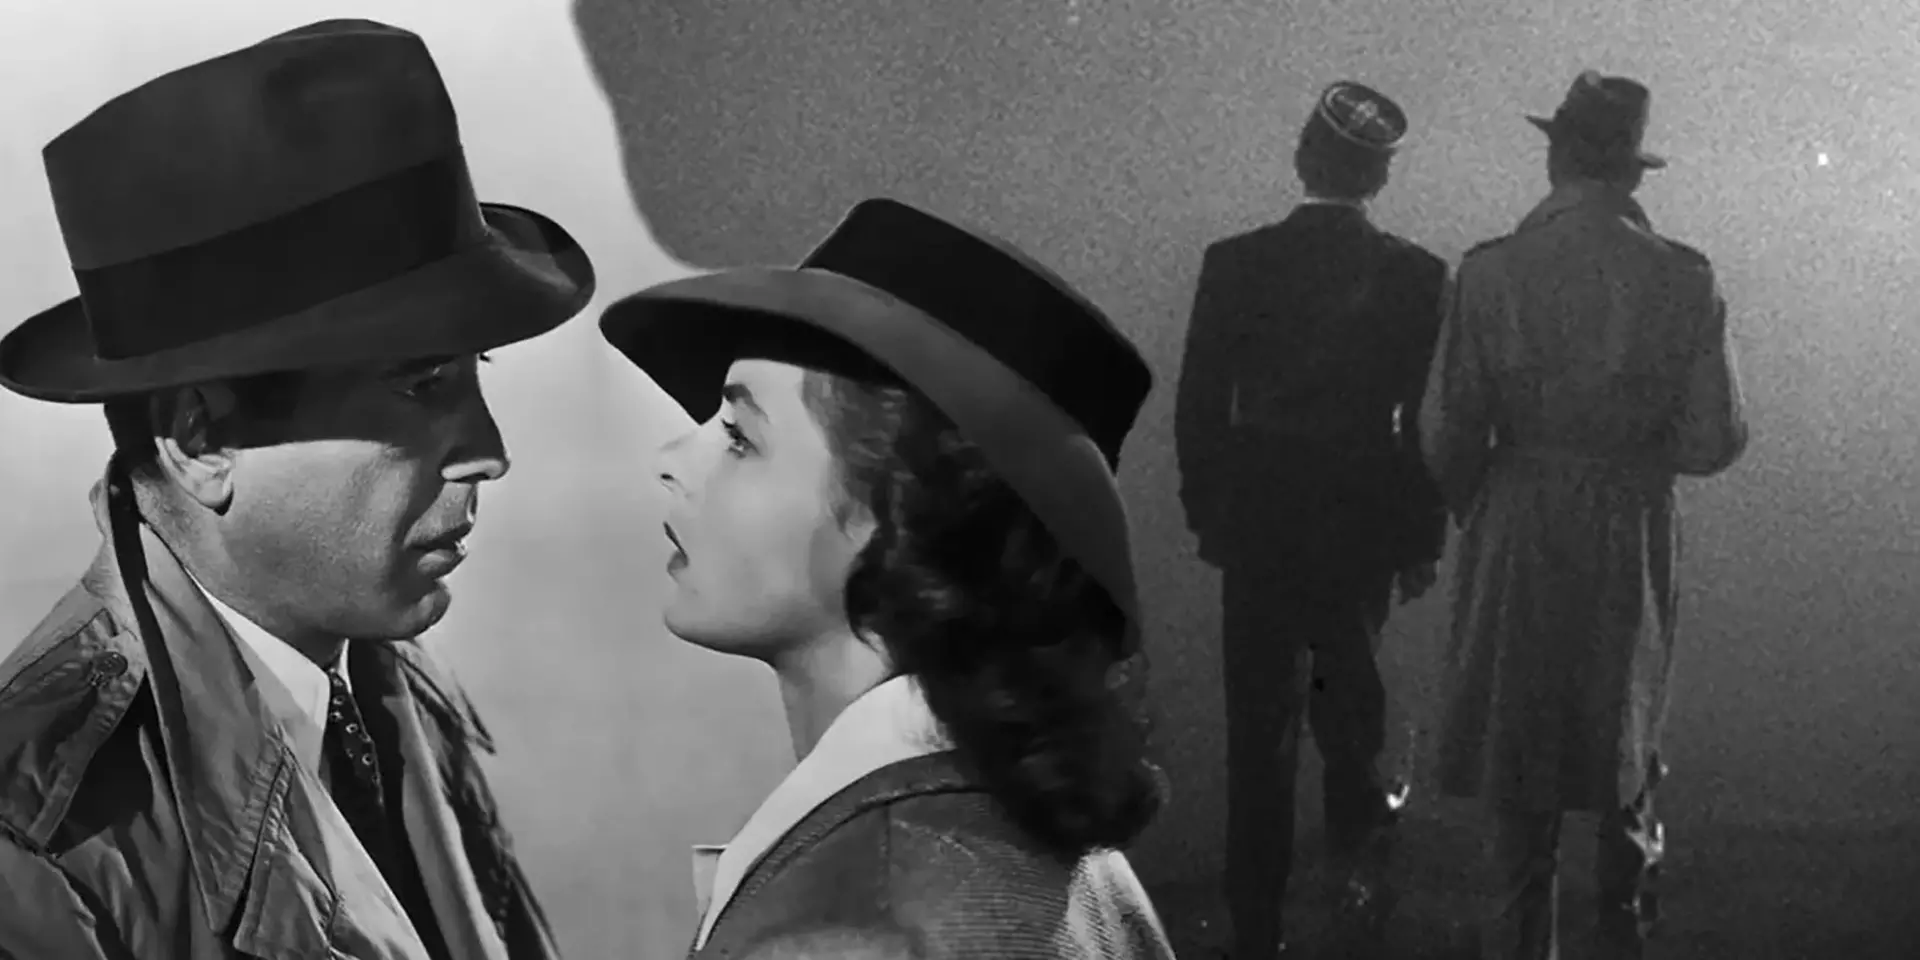 اینگرید برگمن و همفری بوگارت در فیلم Casablanca